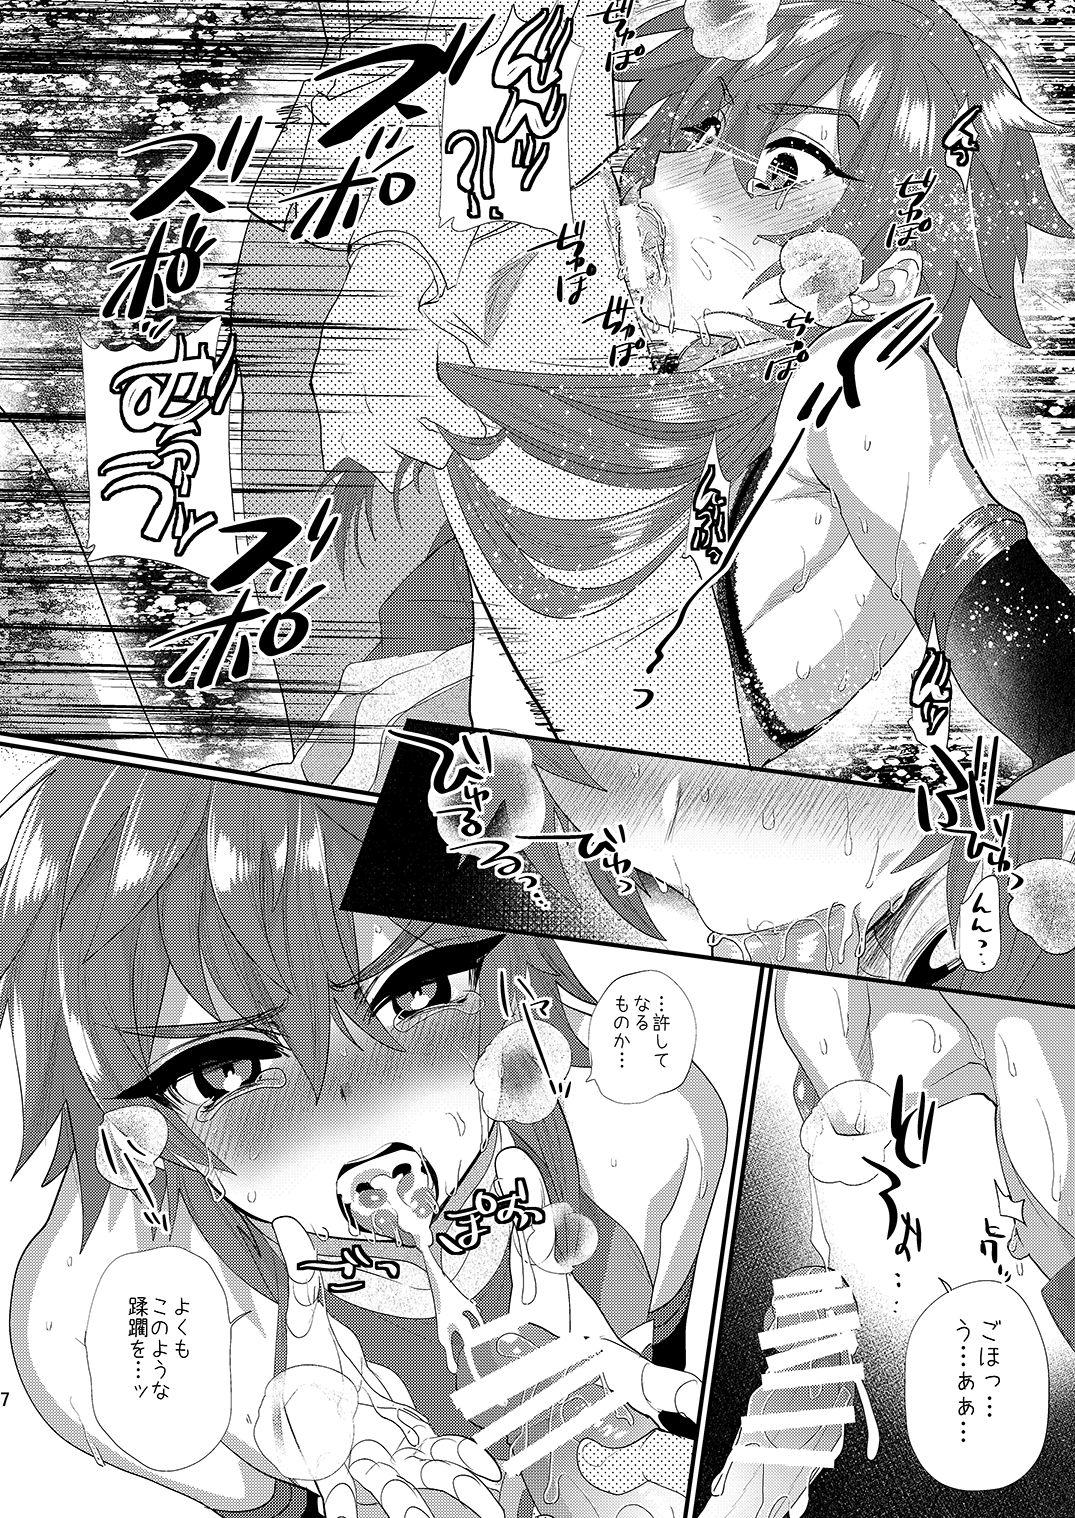 Weird Kizuna LV0 no raama ou to himitsuno omajinai - Fate grand order Dyke - Page 7